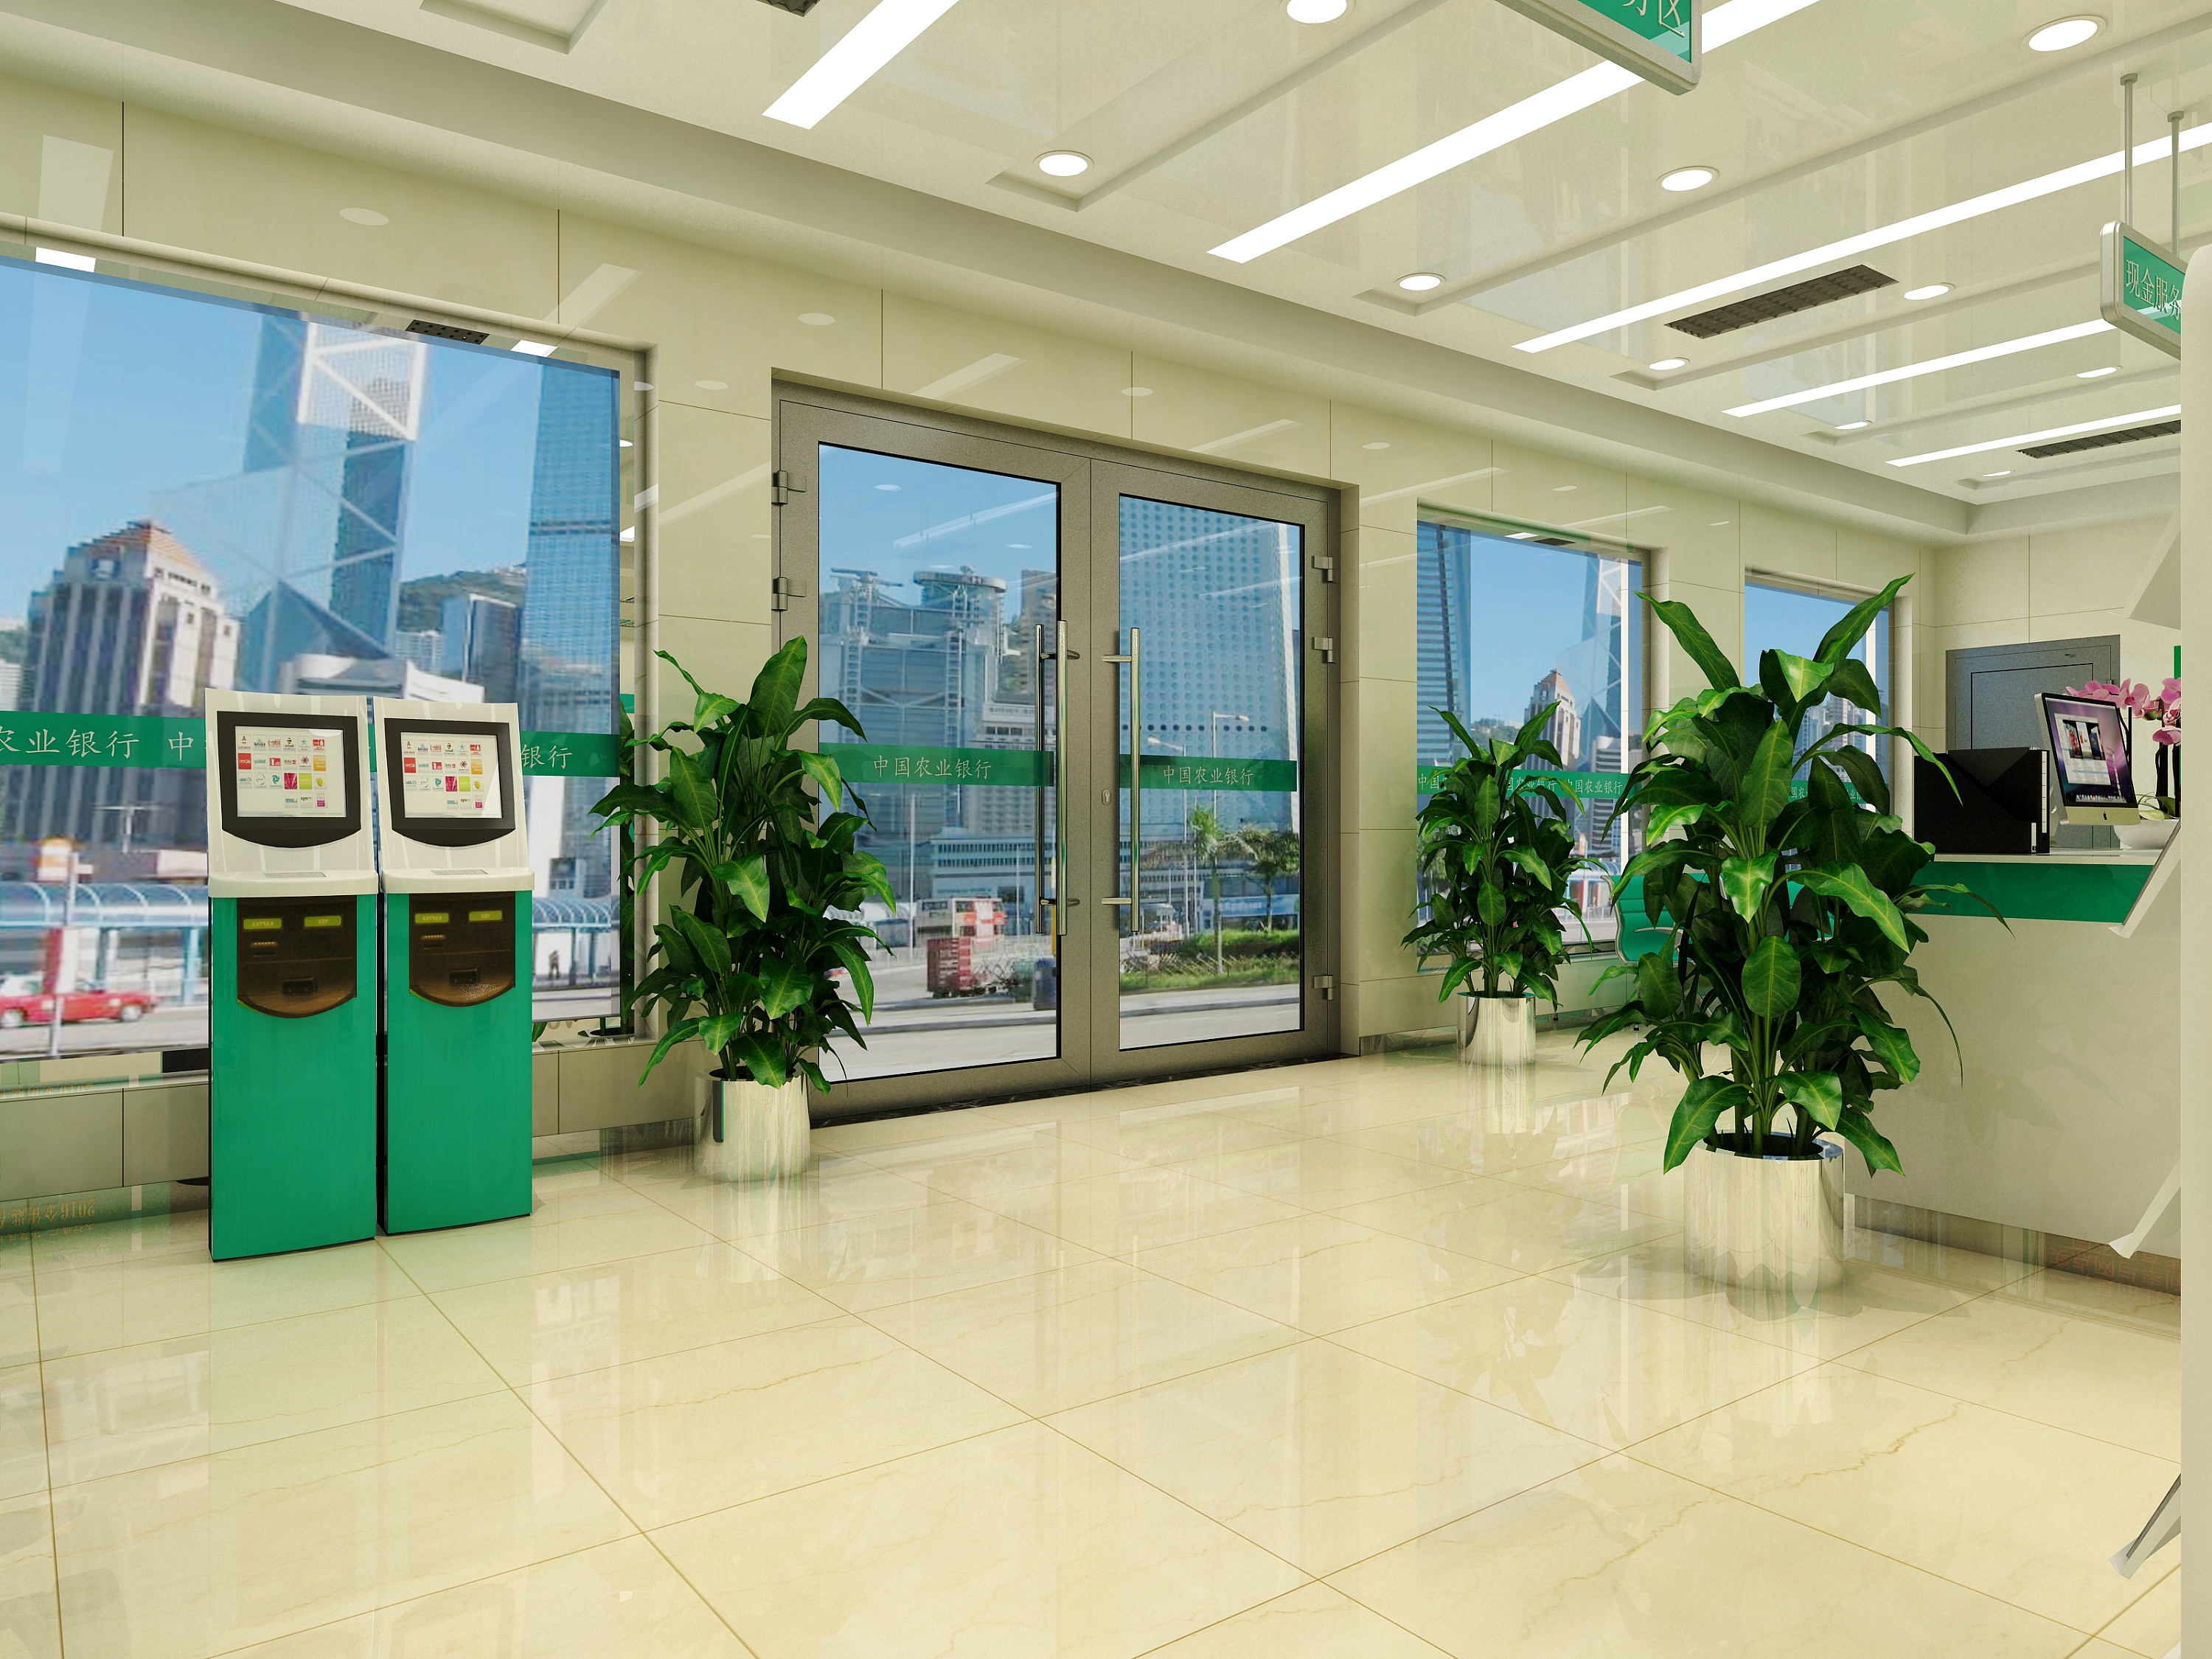 邮储银行佛山市分行改善厅堂环境为客户提供高质量服务